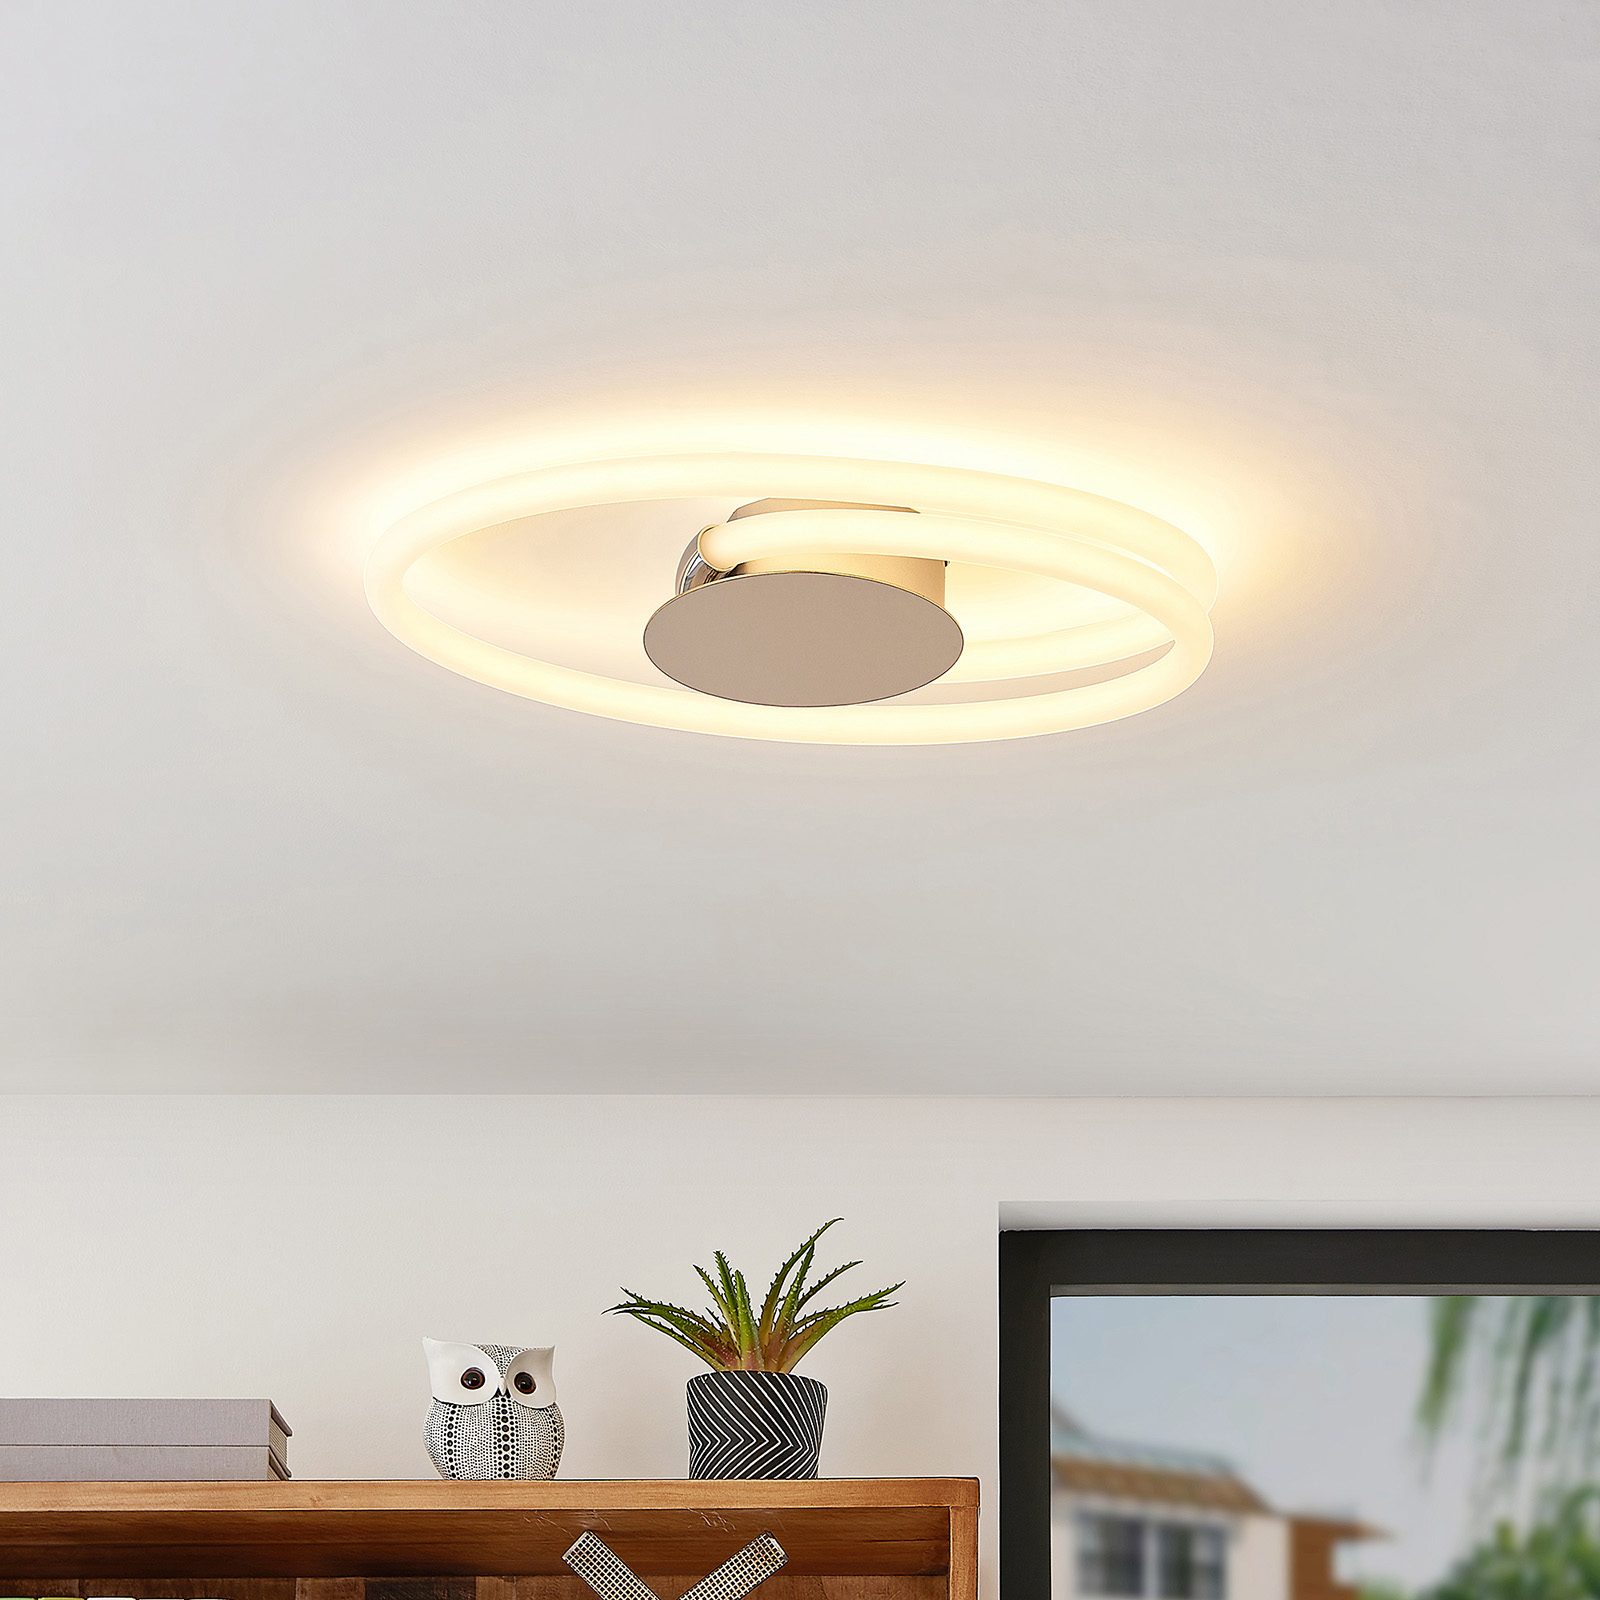 Lucande Ovala LED ceiling light, 53 cm